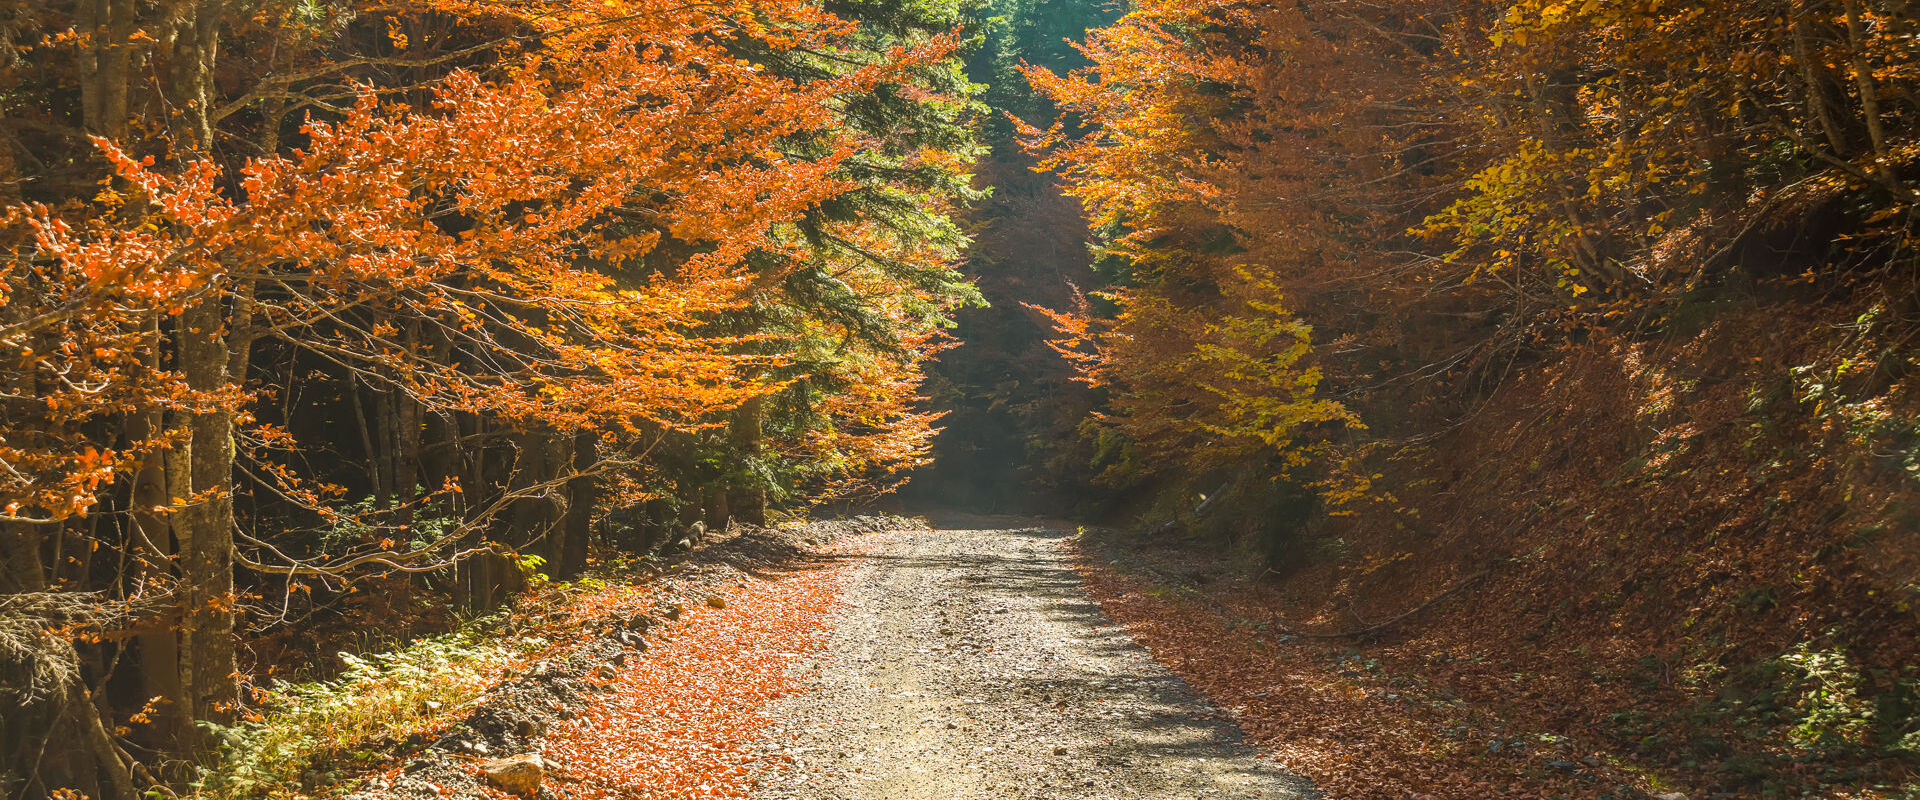 Arbres aux feuilles dorées en automne à Valia Κalda